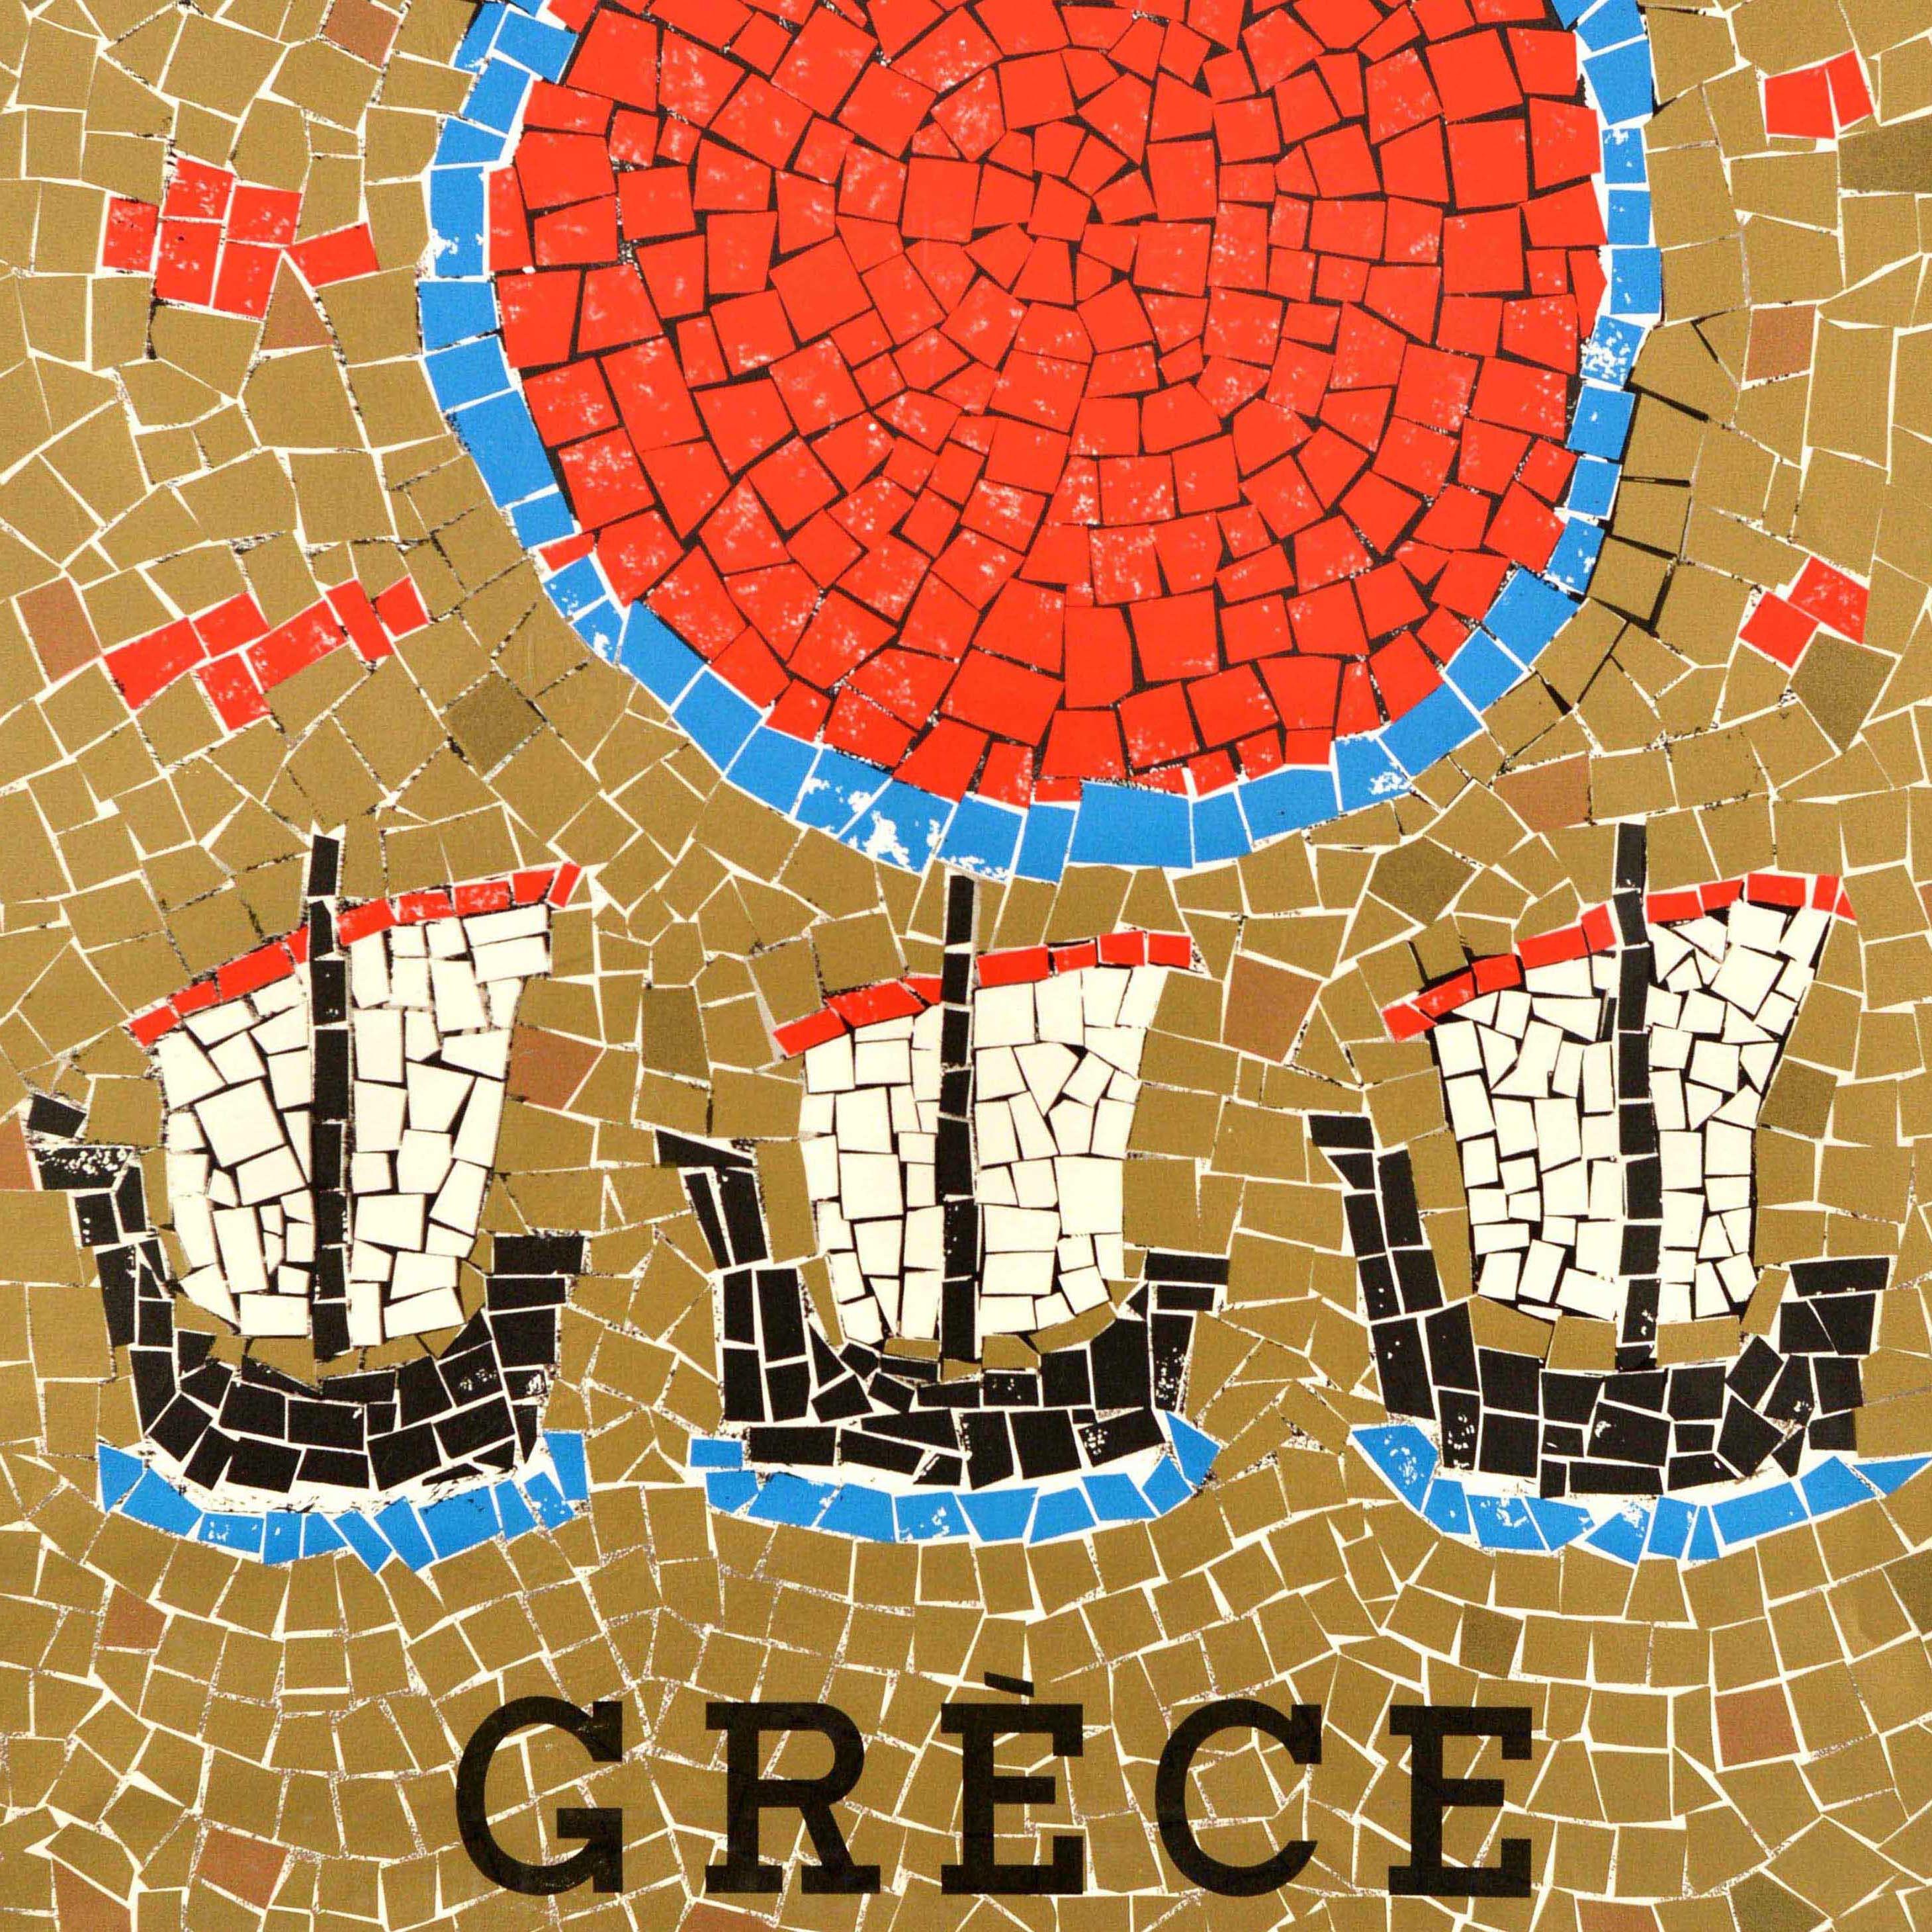 Affiche de voyage vintage originale pour la Grèce - Griechenland - comportant une image colorée de style mosaïque représentant trois bateaux à voile avec un soleil brillant dans le ciel. Bon état, plis, déchirures, trous d'épingle, petites pertes de